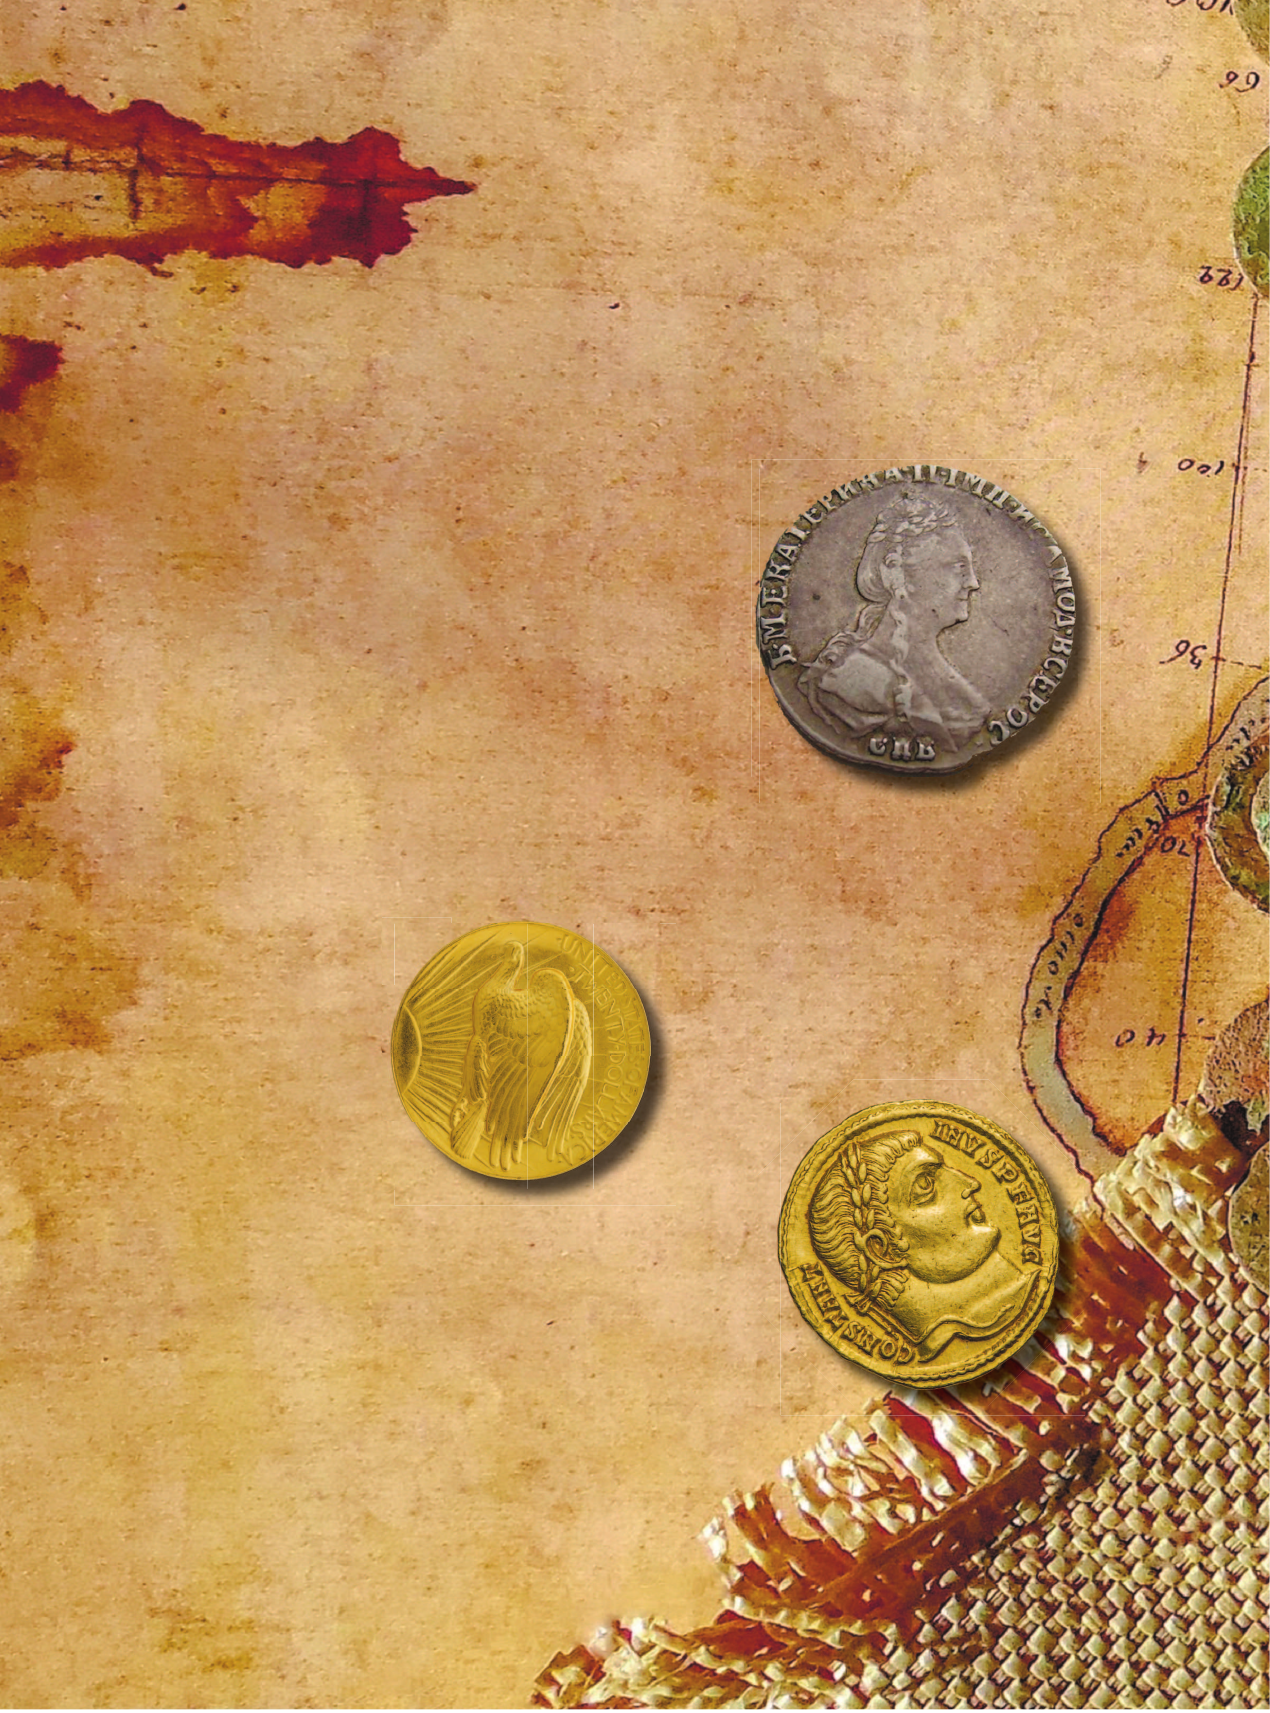 Монеты мира. Визуальная история развития мировой нумизматики от древности до наших дней - фото №16